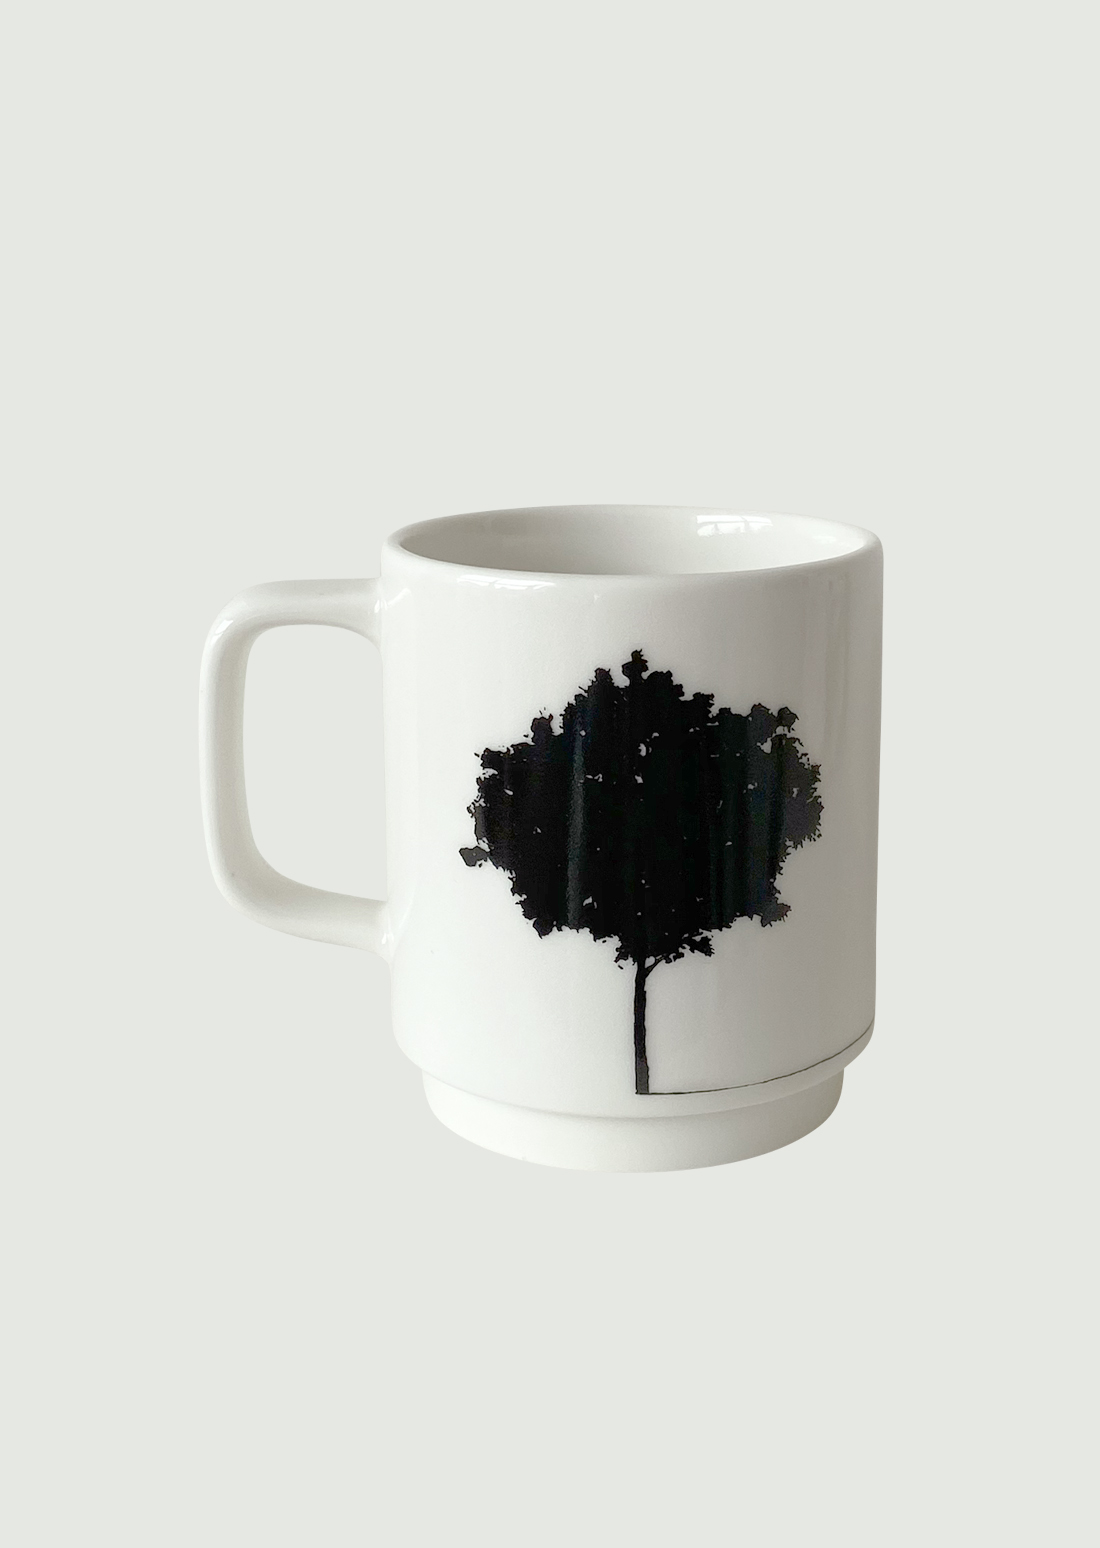 “A JOURNEY” ceramic mug cup